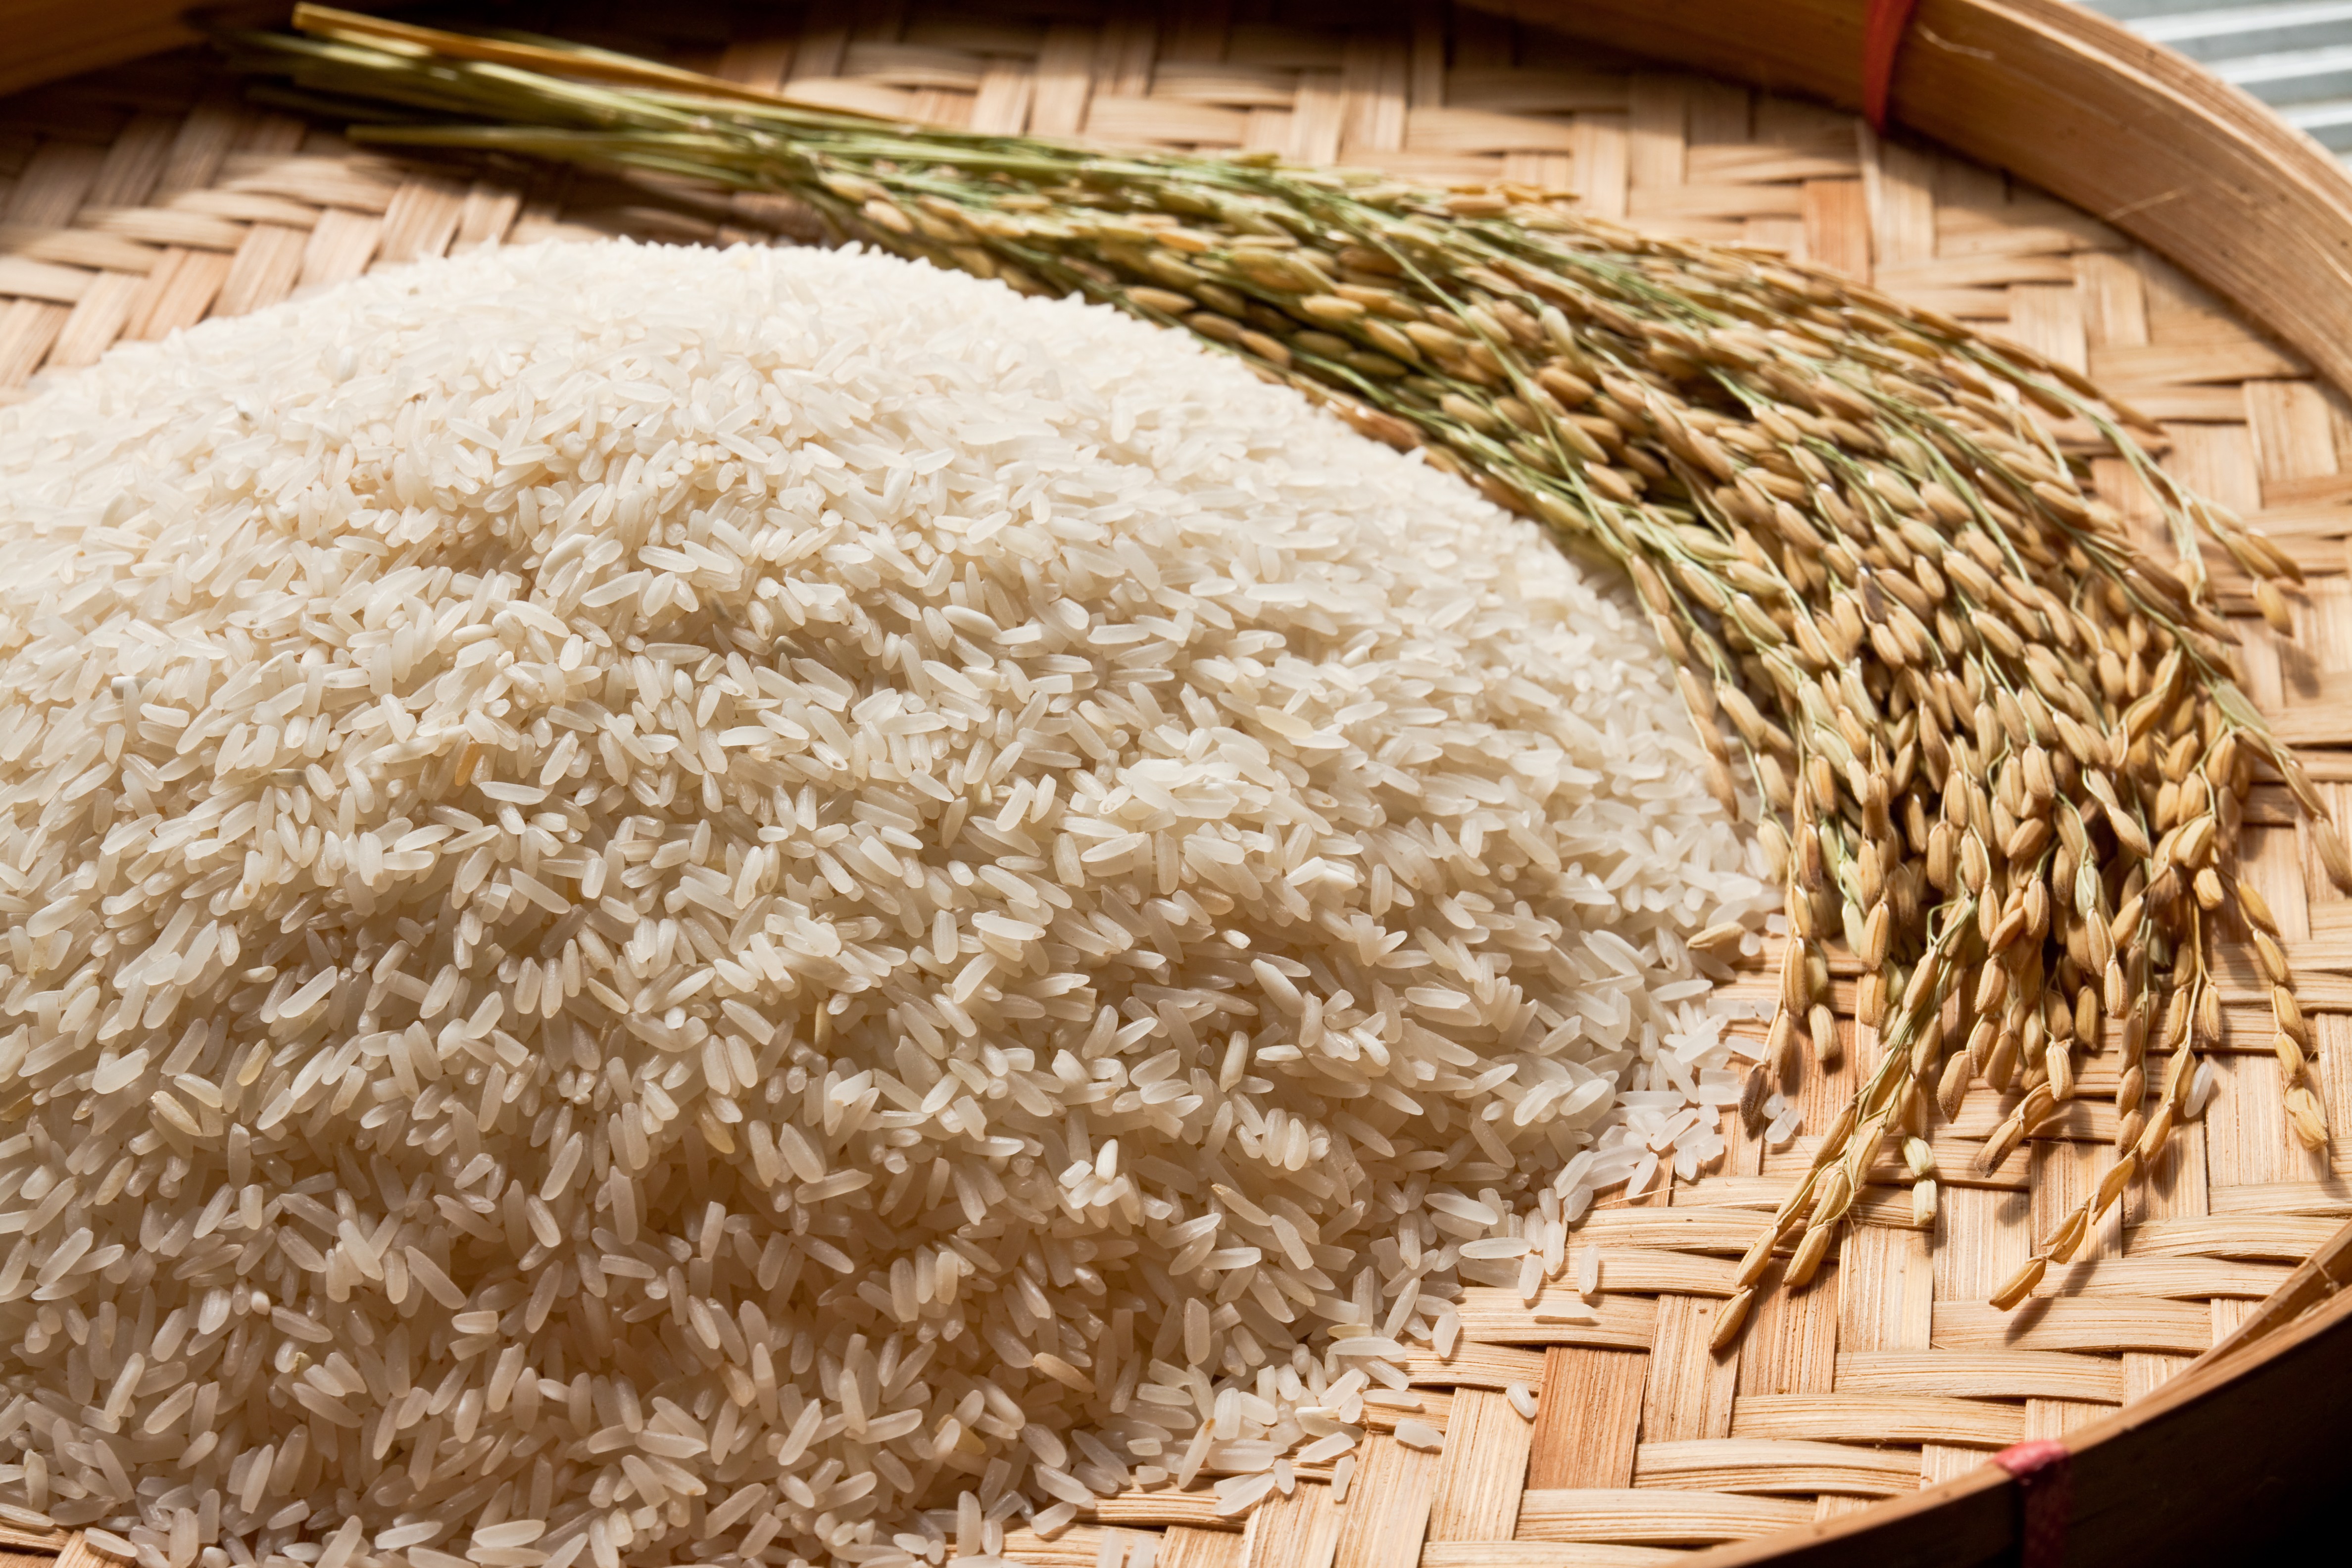 Ministérios defendem legalidade de medidas para importação de arroz